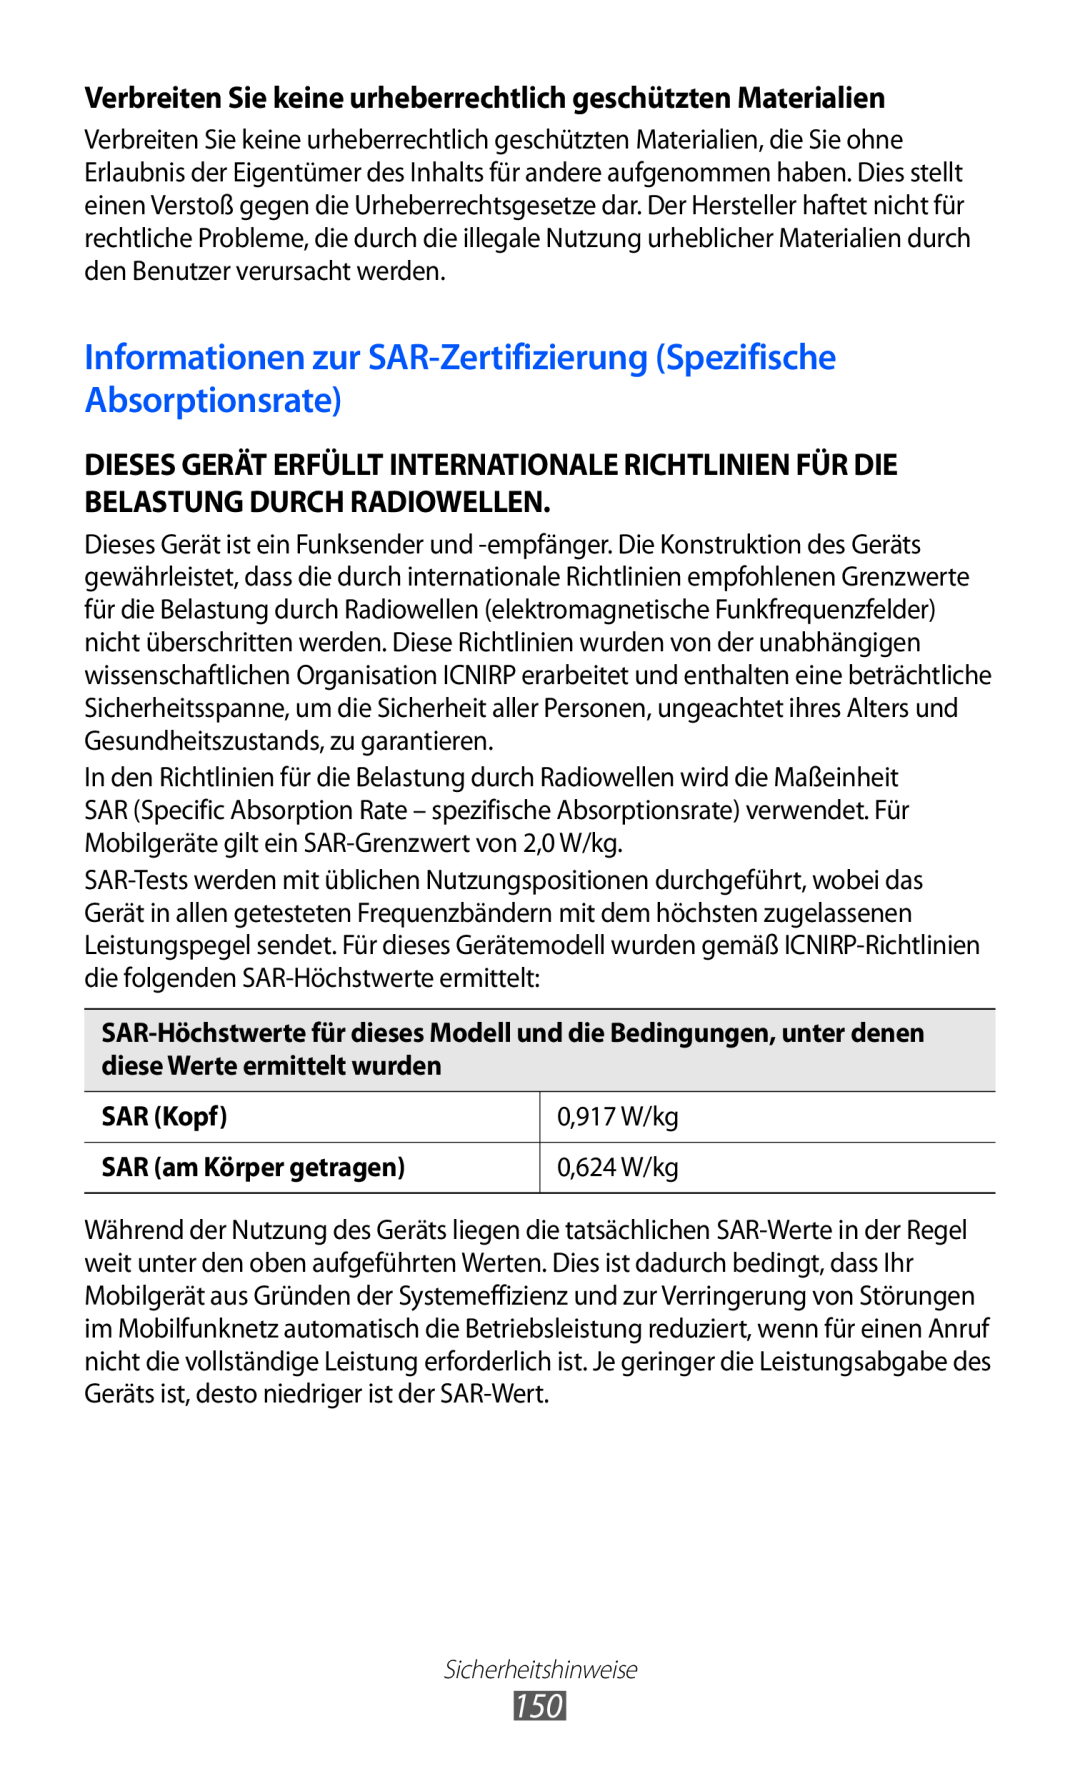 Samsung GT-S6500ZYDTCL Informationen zur SAR-Zertifizierung Spezifische Absorptionsrate, SAR Kopf, 0,917 W/kg, 0,624 W/kg 